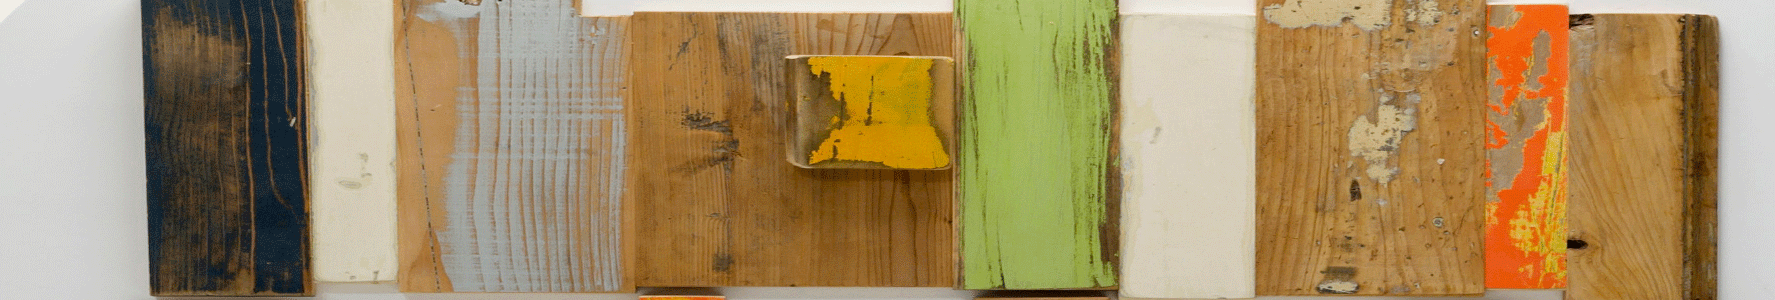 materiale legno vintage antico di recupero verde